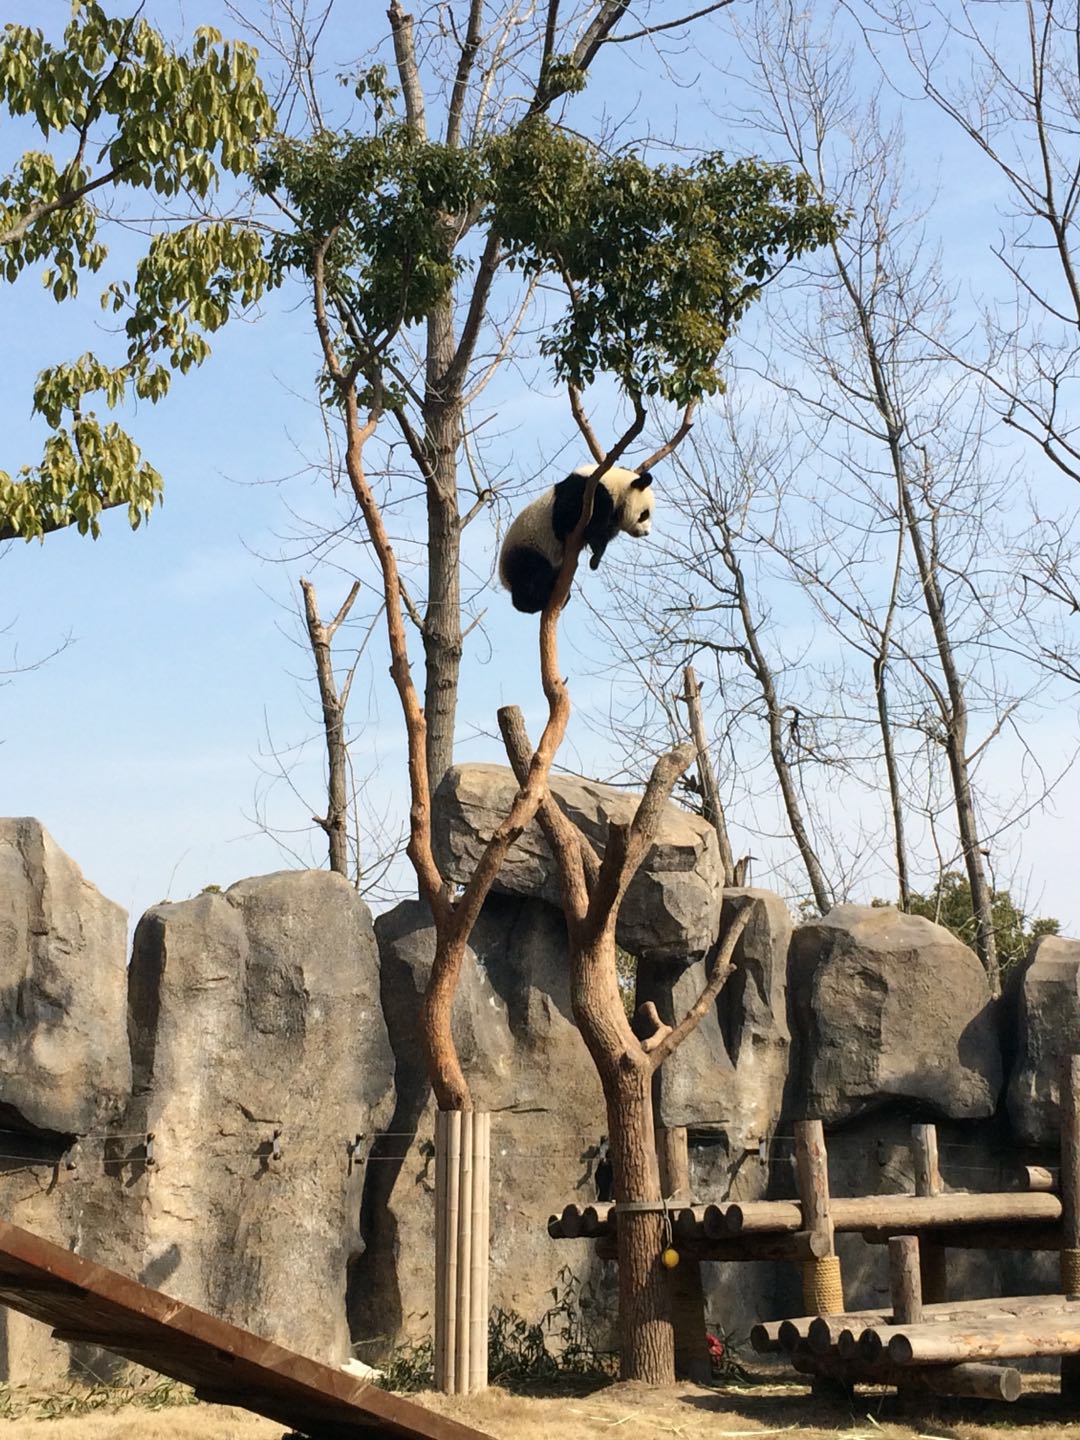 Ich wusste gar nicht, dass Pandas so klettern können ;)...